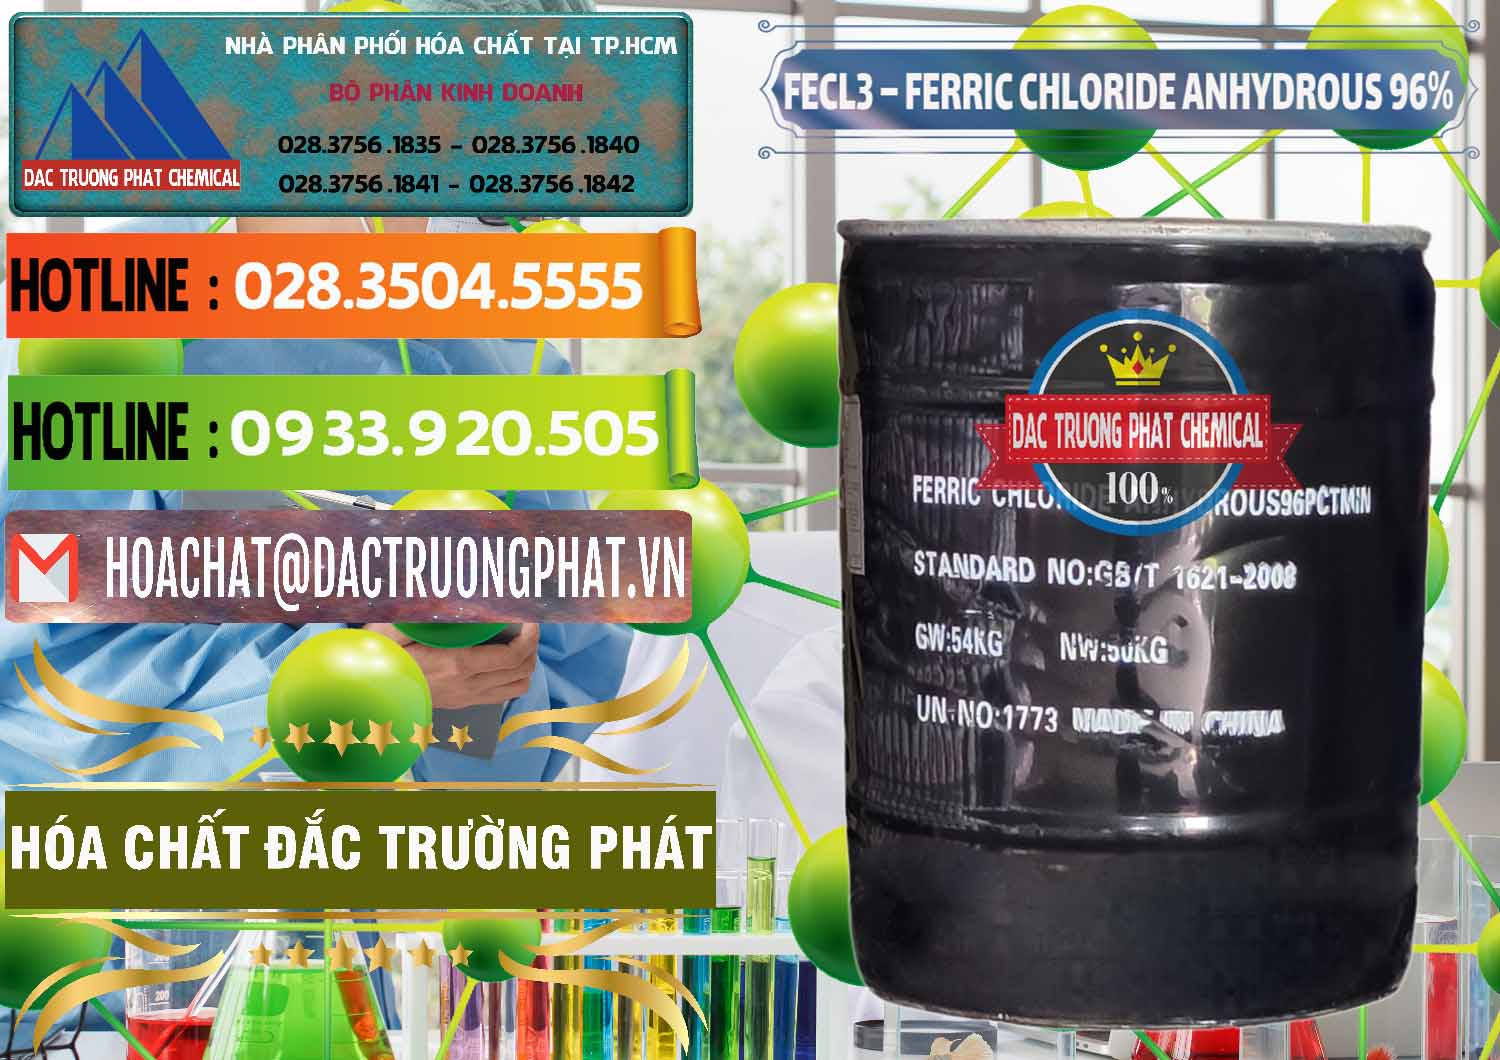 Nơi chuyên bán _ cung cấp FECL3 – Ferric Chloride Anhydrous 96% Trung Quốc China - 0065 - Đơn vị chuyên phân phối _ bán hóa chất tại TP.HCM - cungcaphoachat.com.vn